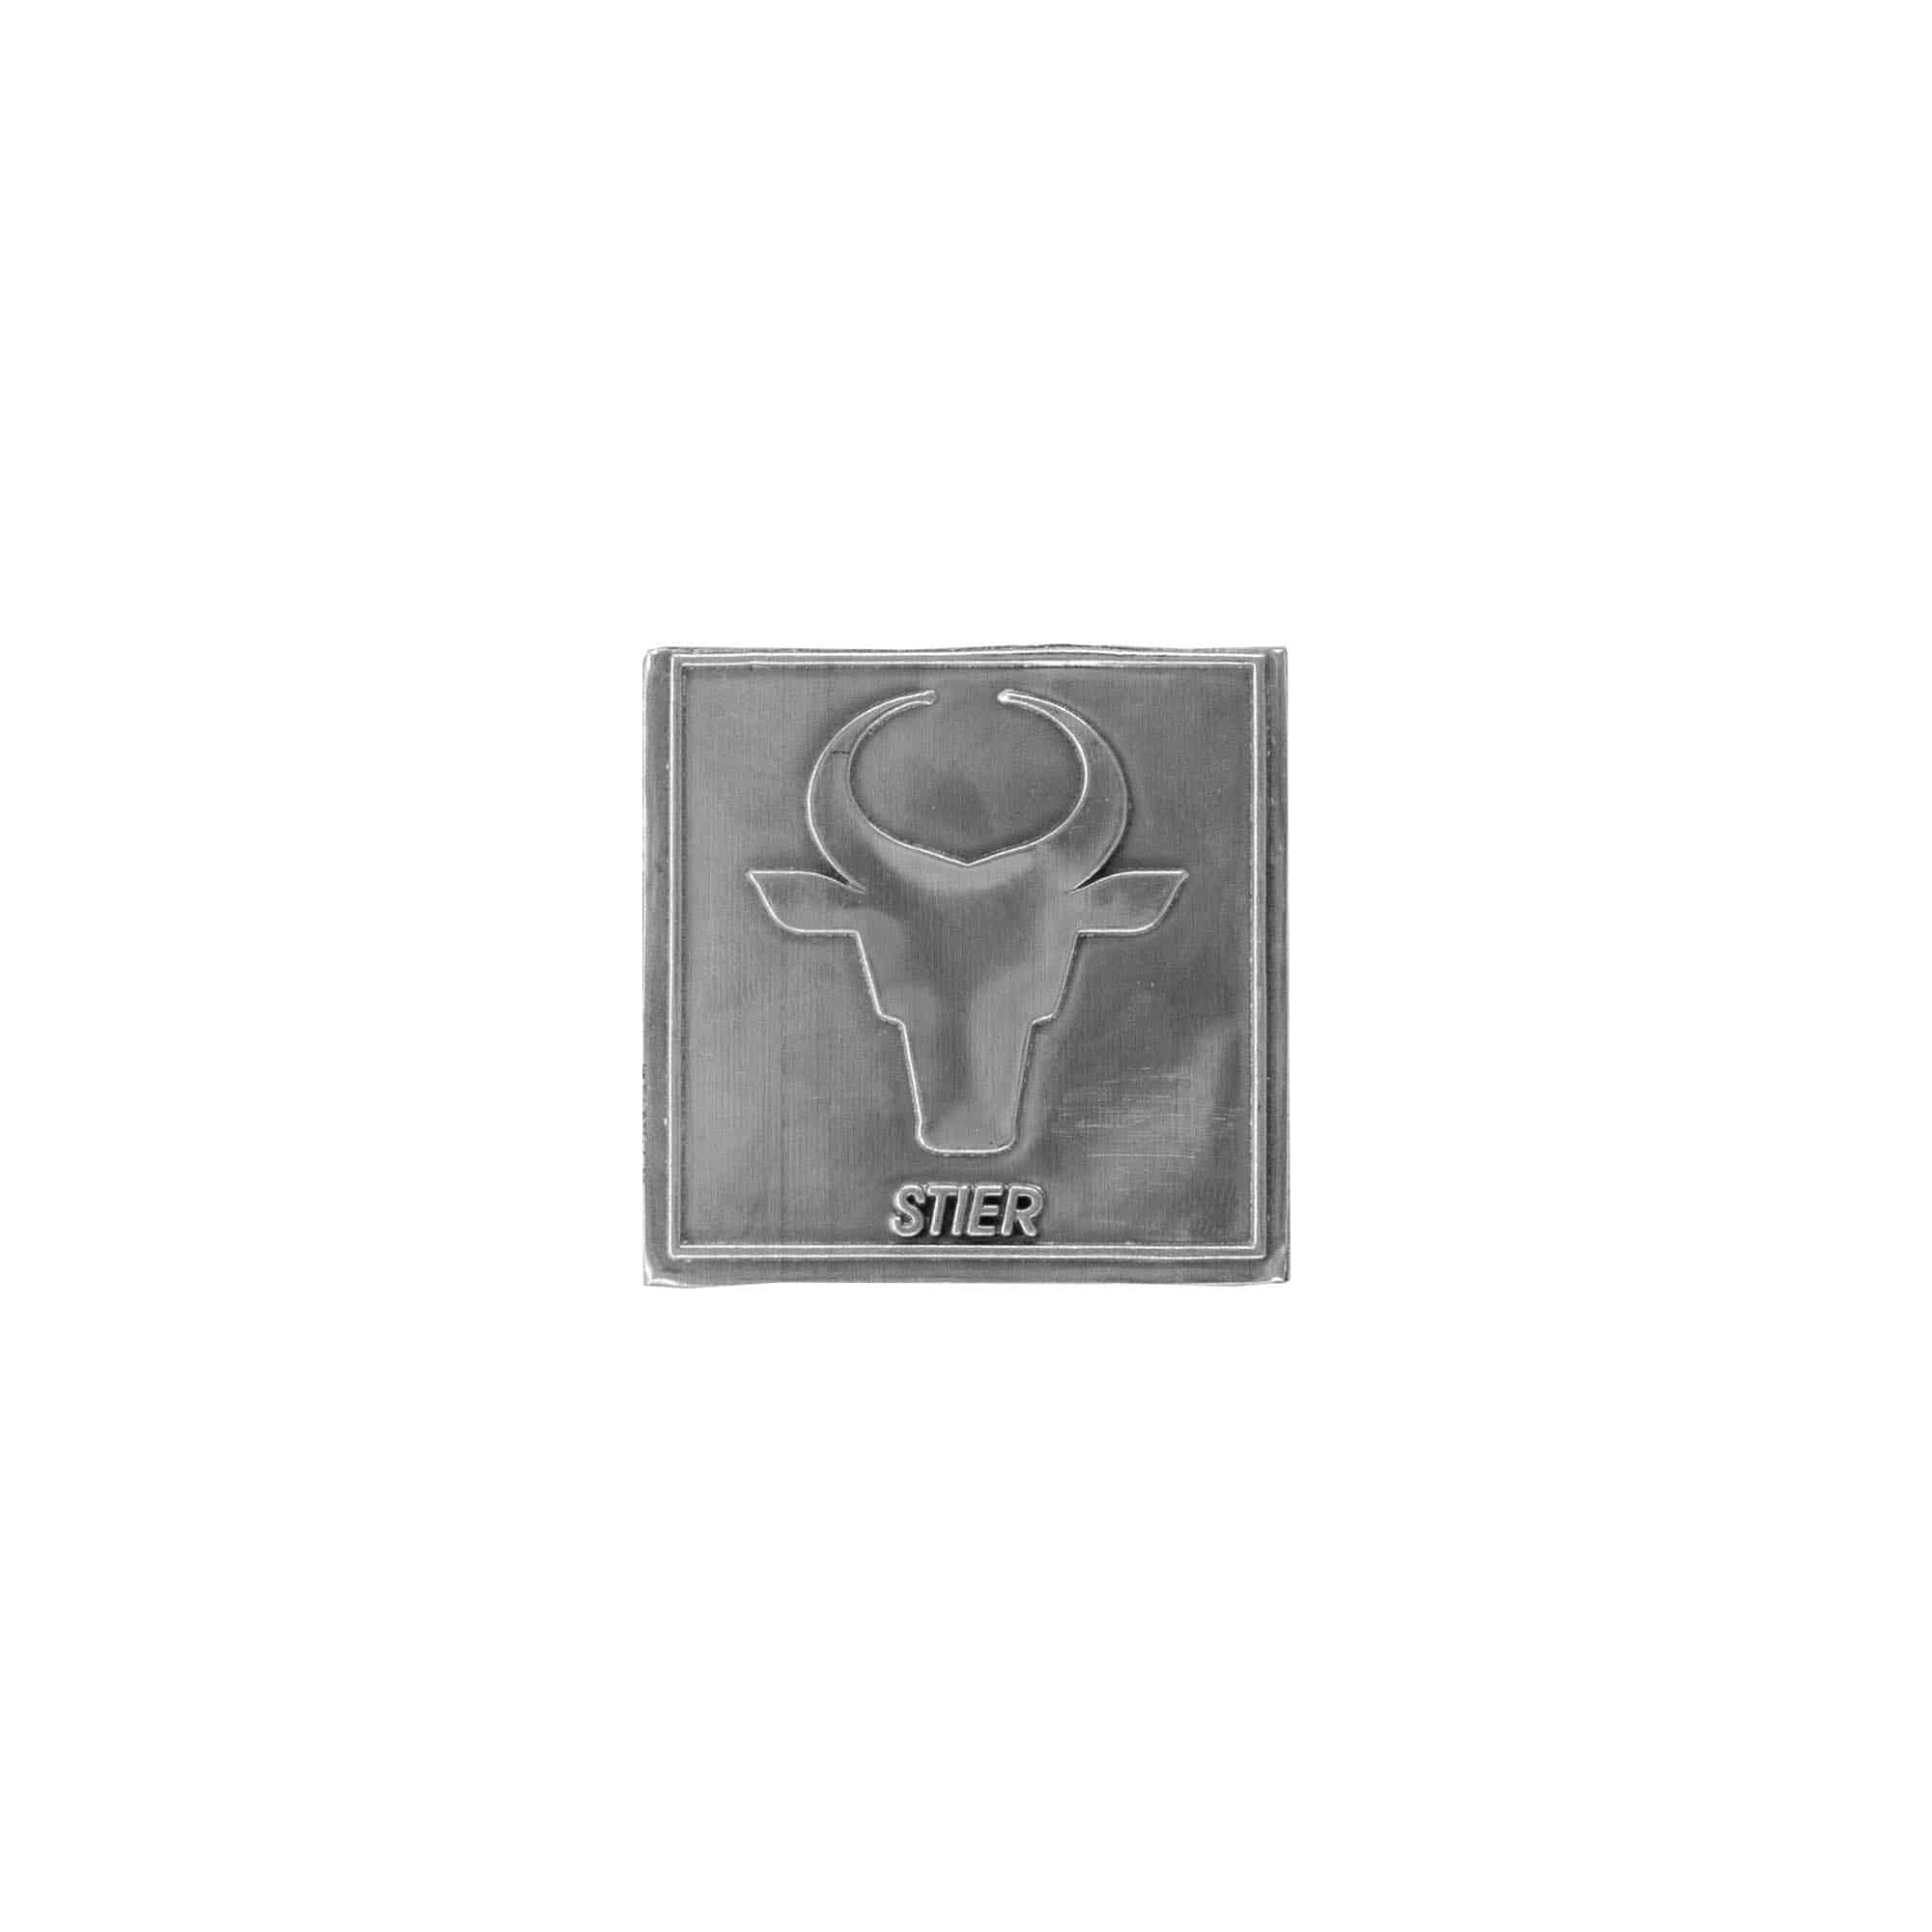 Etykieta cynowa 'Byk', kwadratowa, metal, kolor srebrny